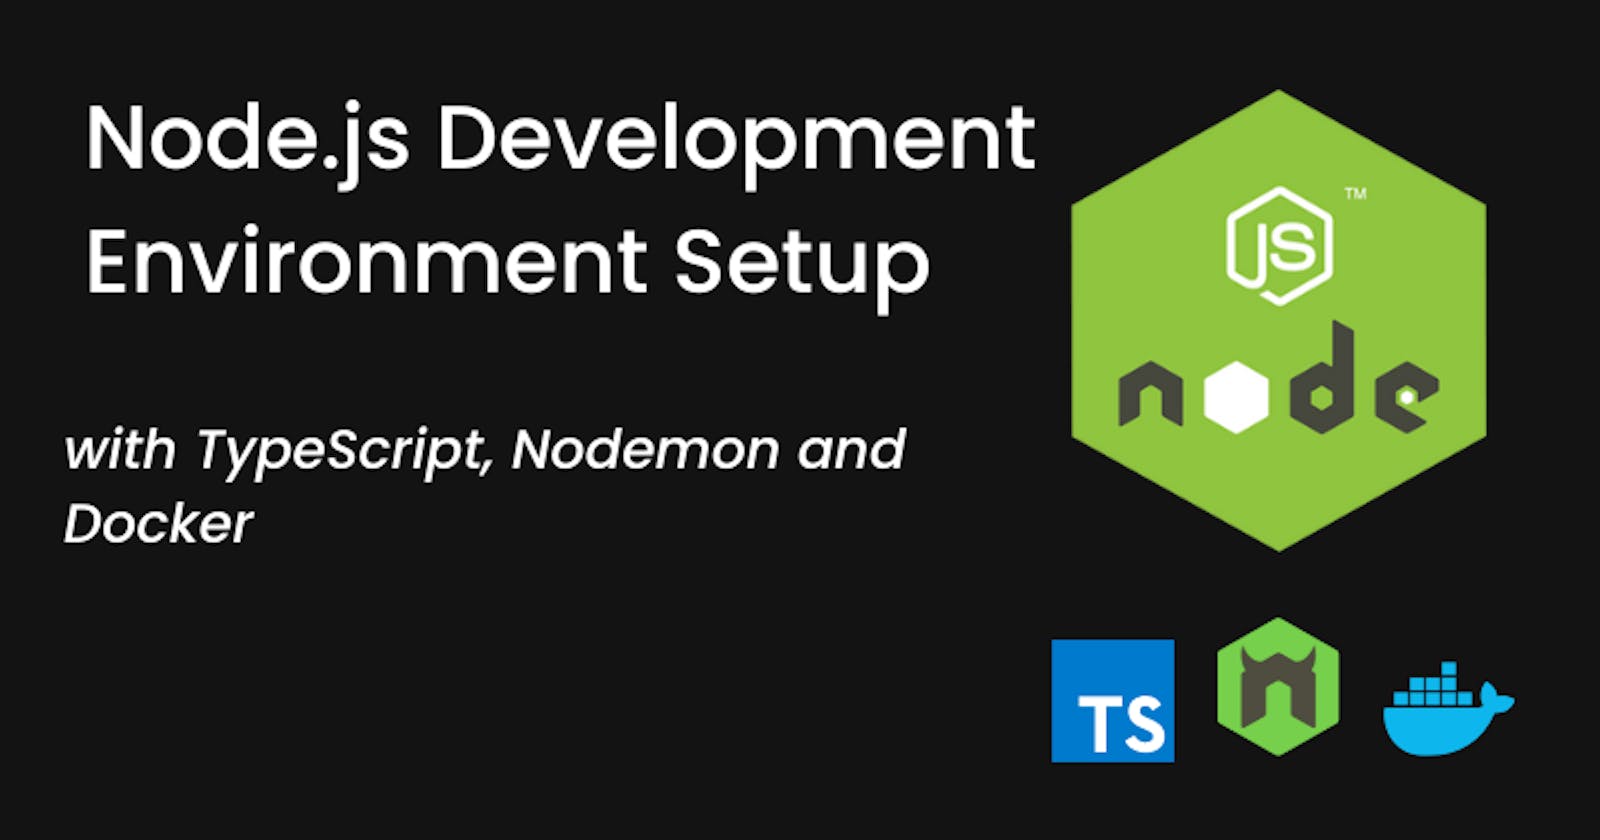 Node.js Development Environment Setup